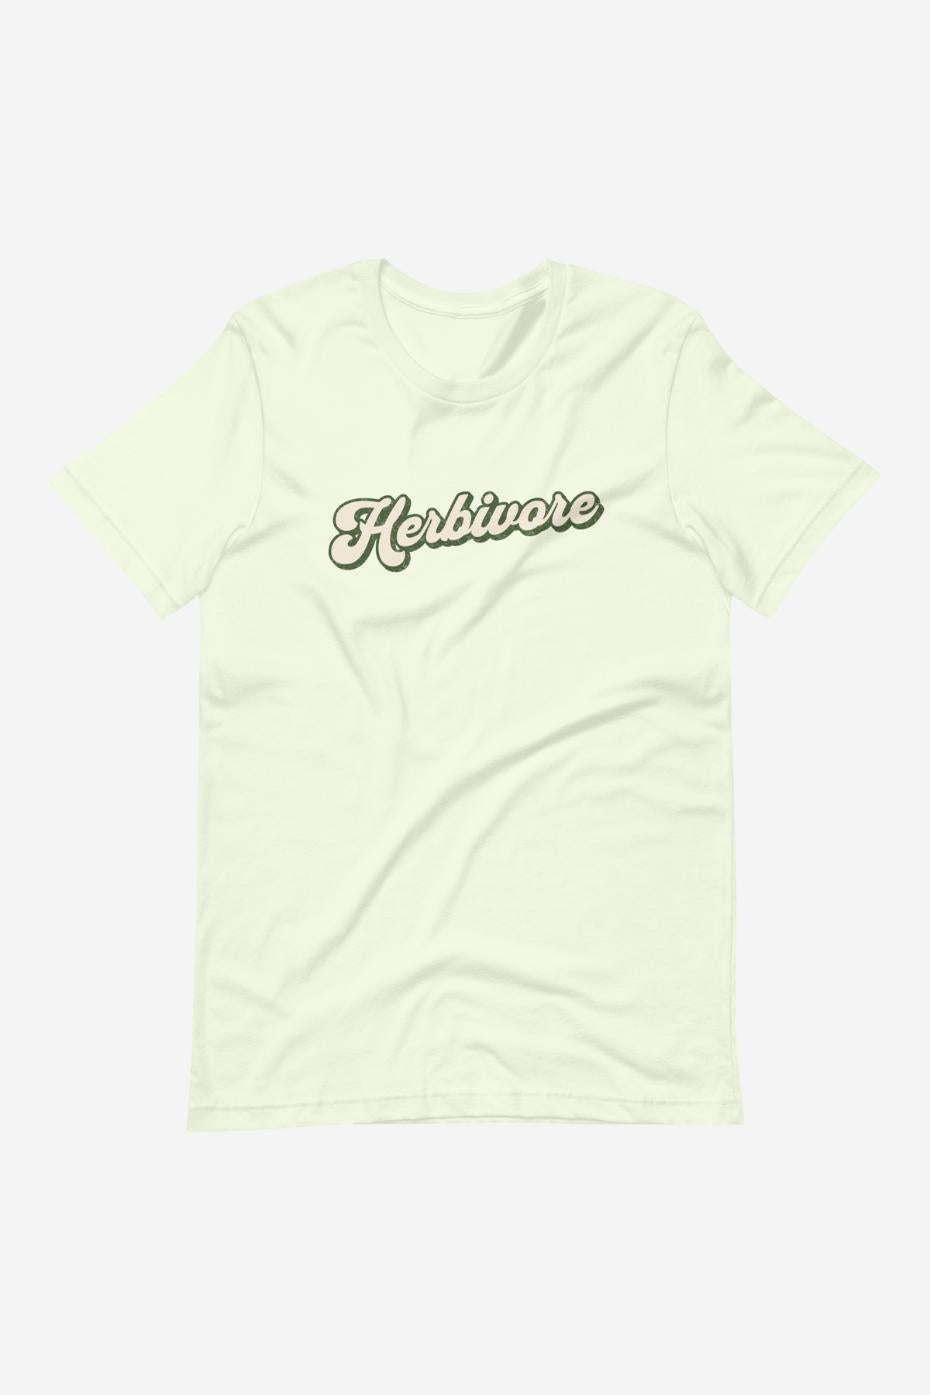 Herbivore - Unisex t-shirt